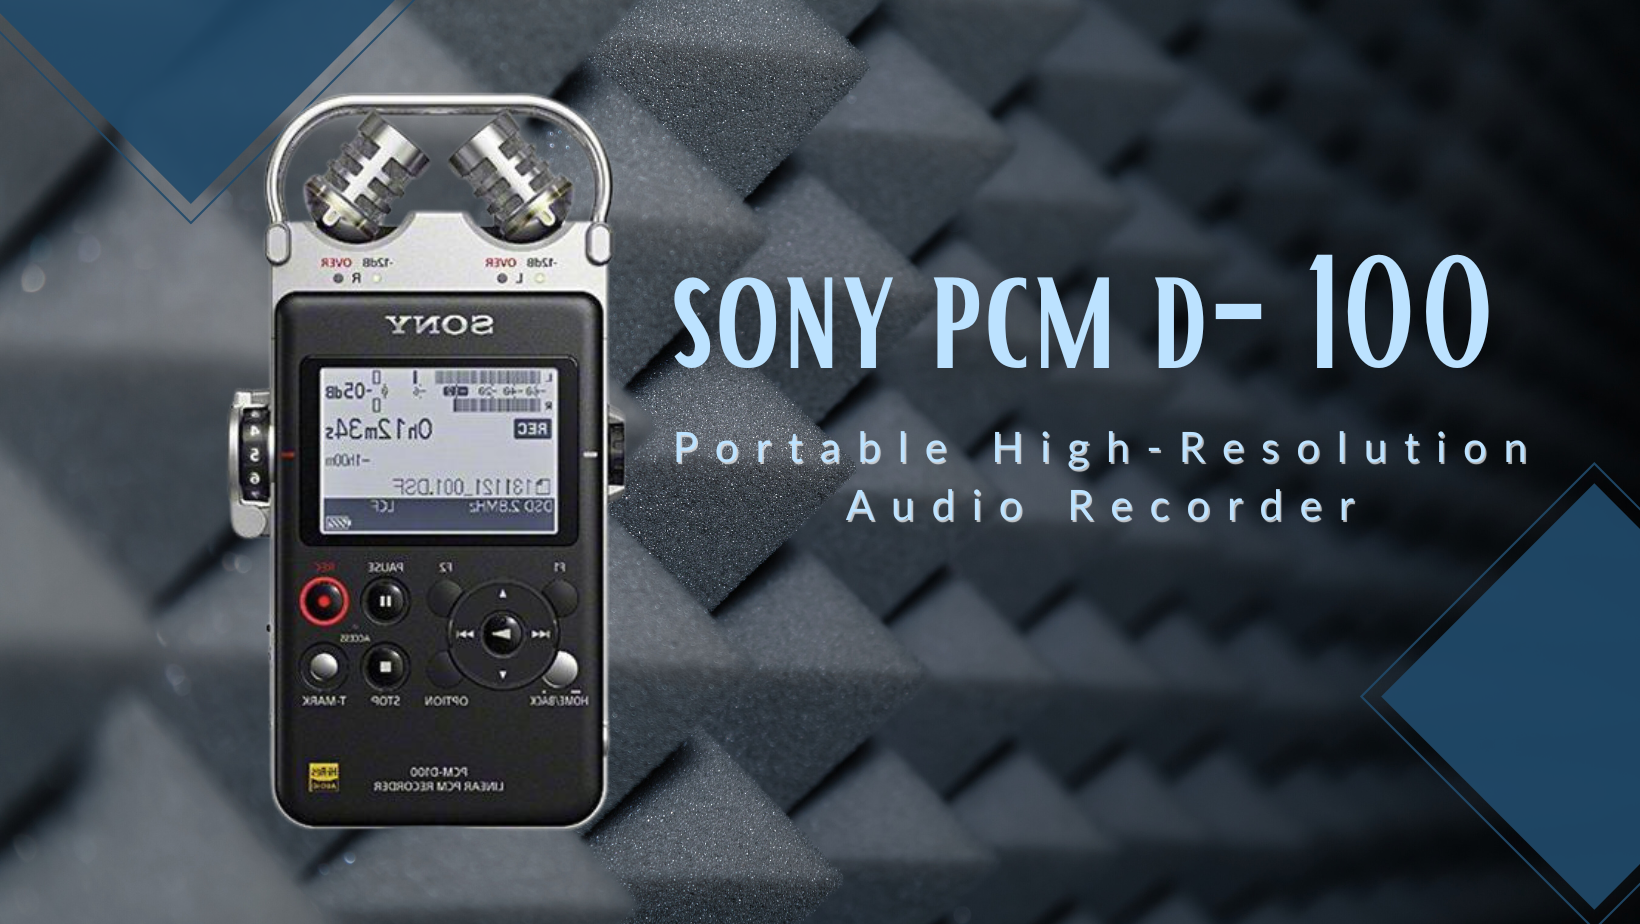 sony pcm d-100 audio recorder